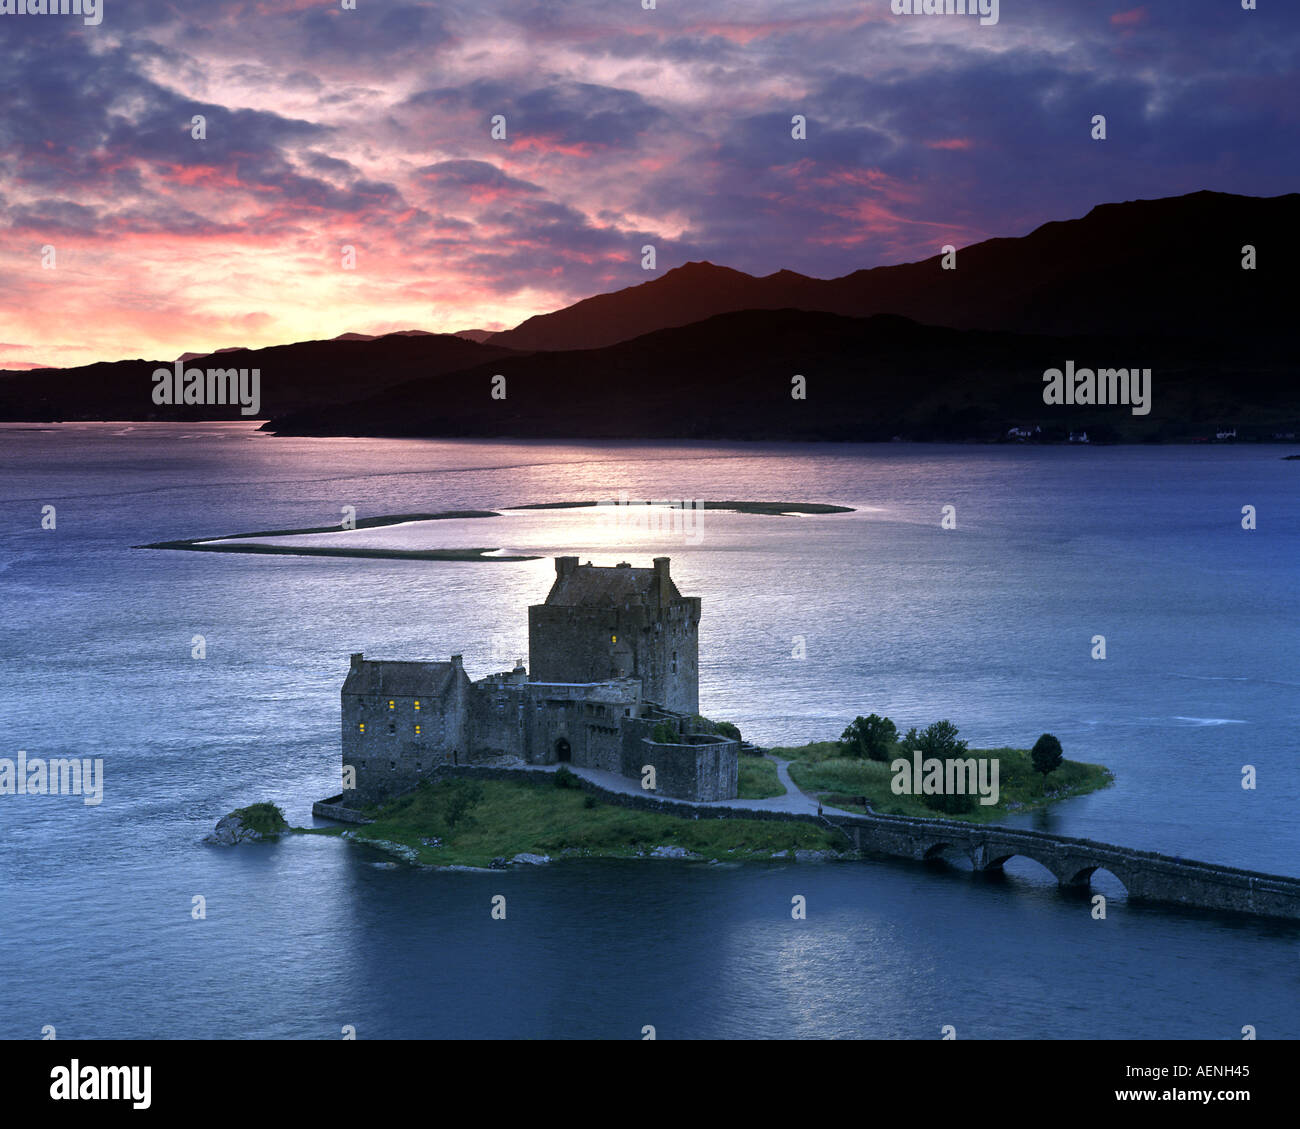 Gb - Ecosse : le château d'Eilean Donan et loch duich au coucher du soleil Banque D'Images